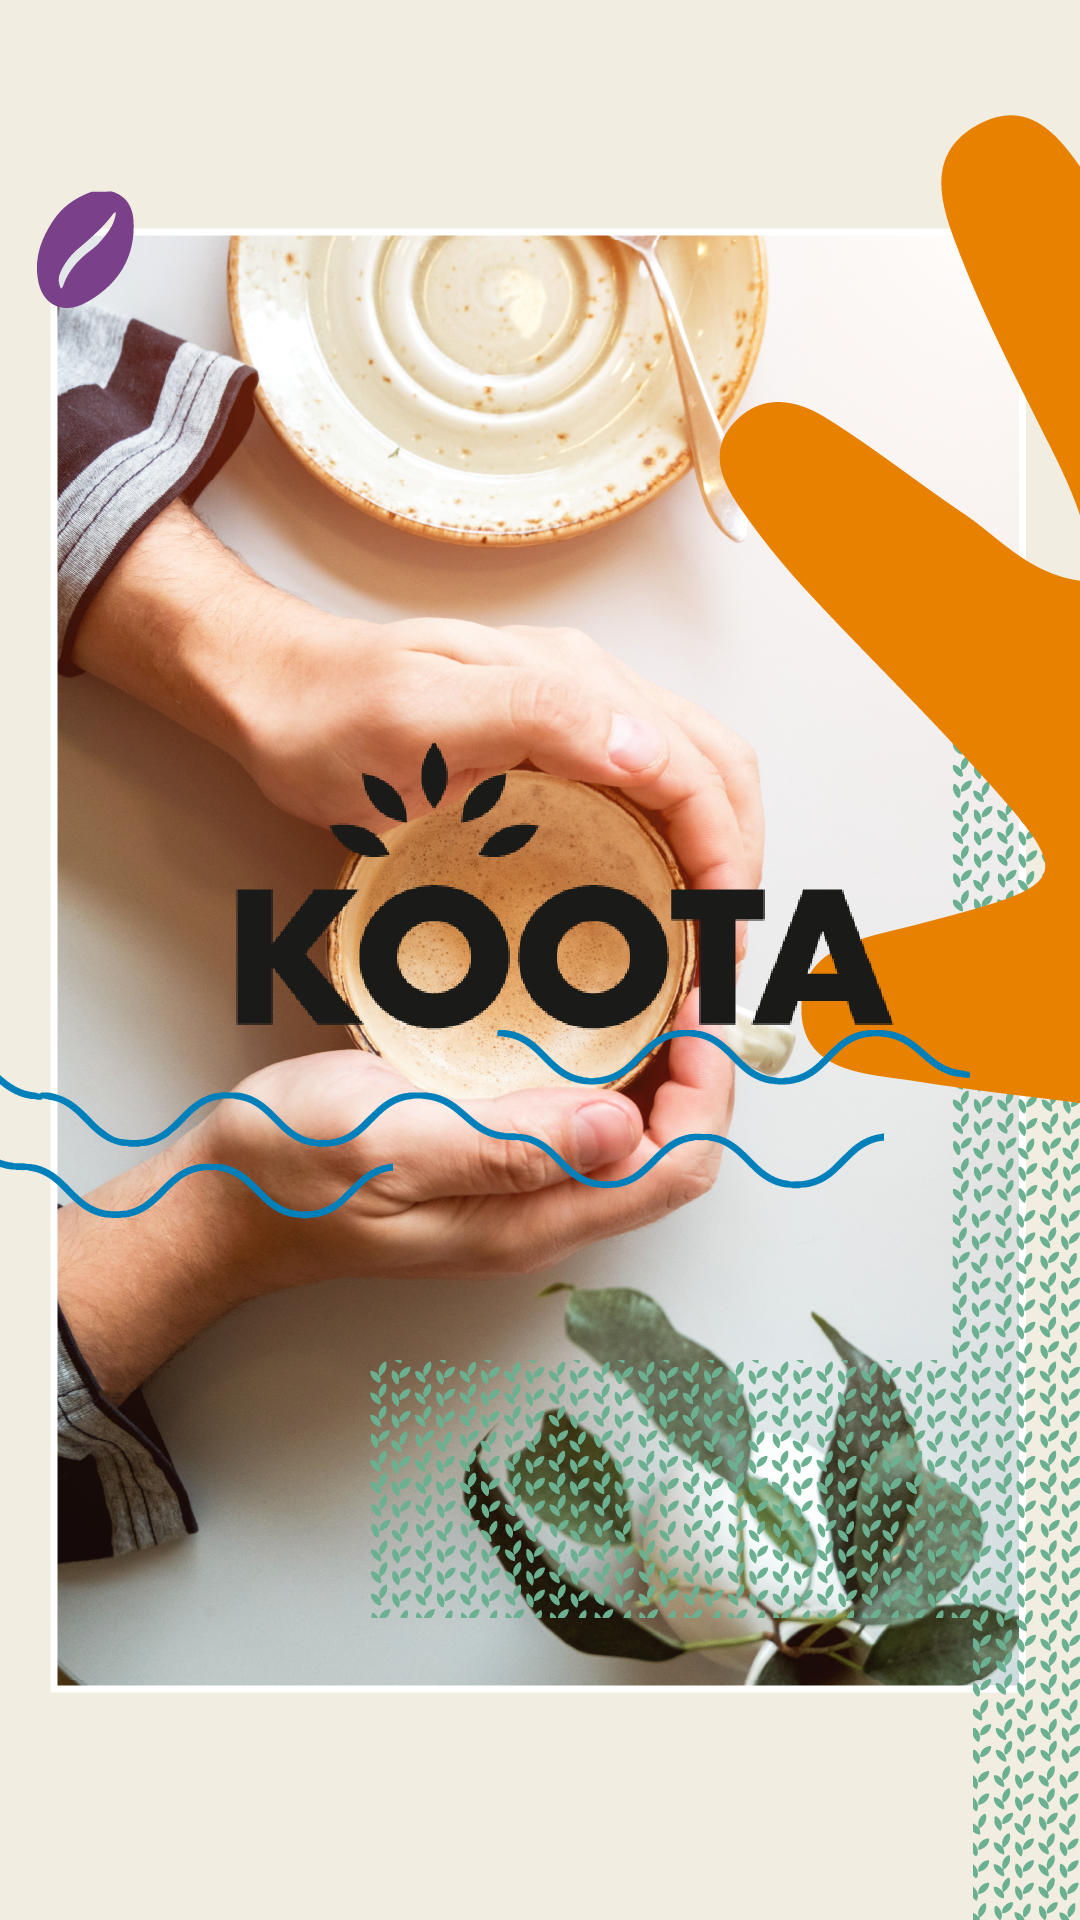 Pourquoi le nom de Koota pour notre café ?